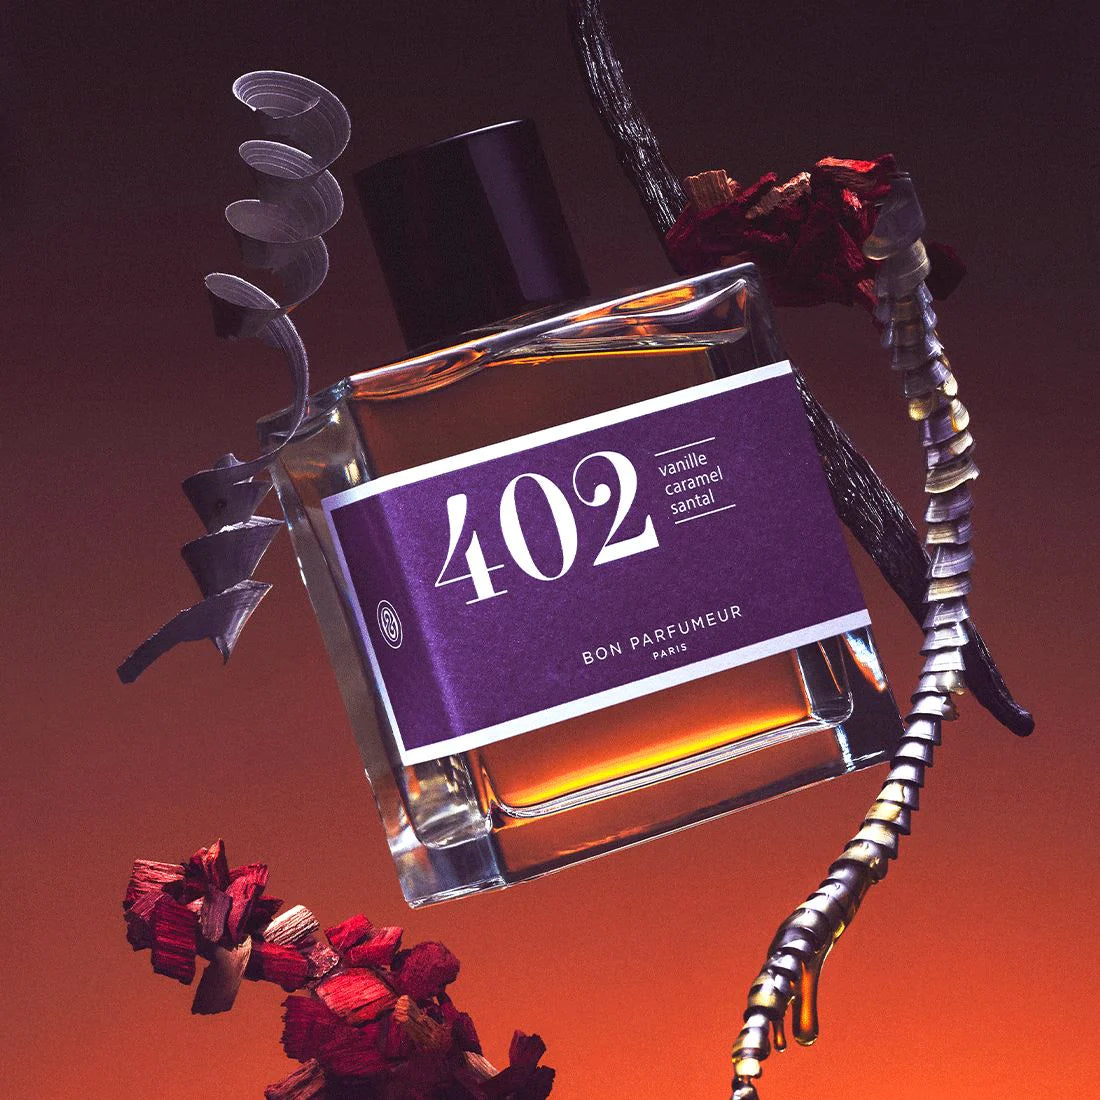 BON PARFUMEUR - Eau de Parfum &quot;402&quot; 30ml